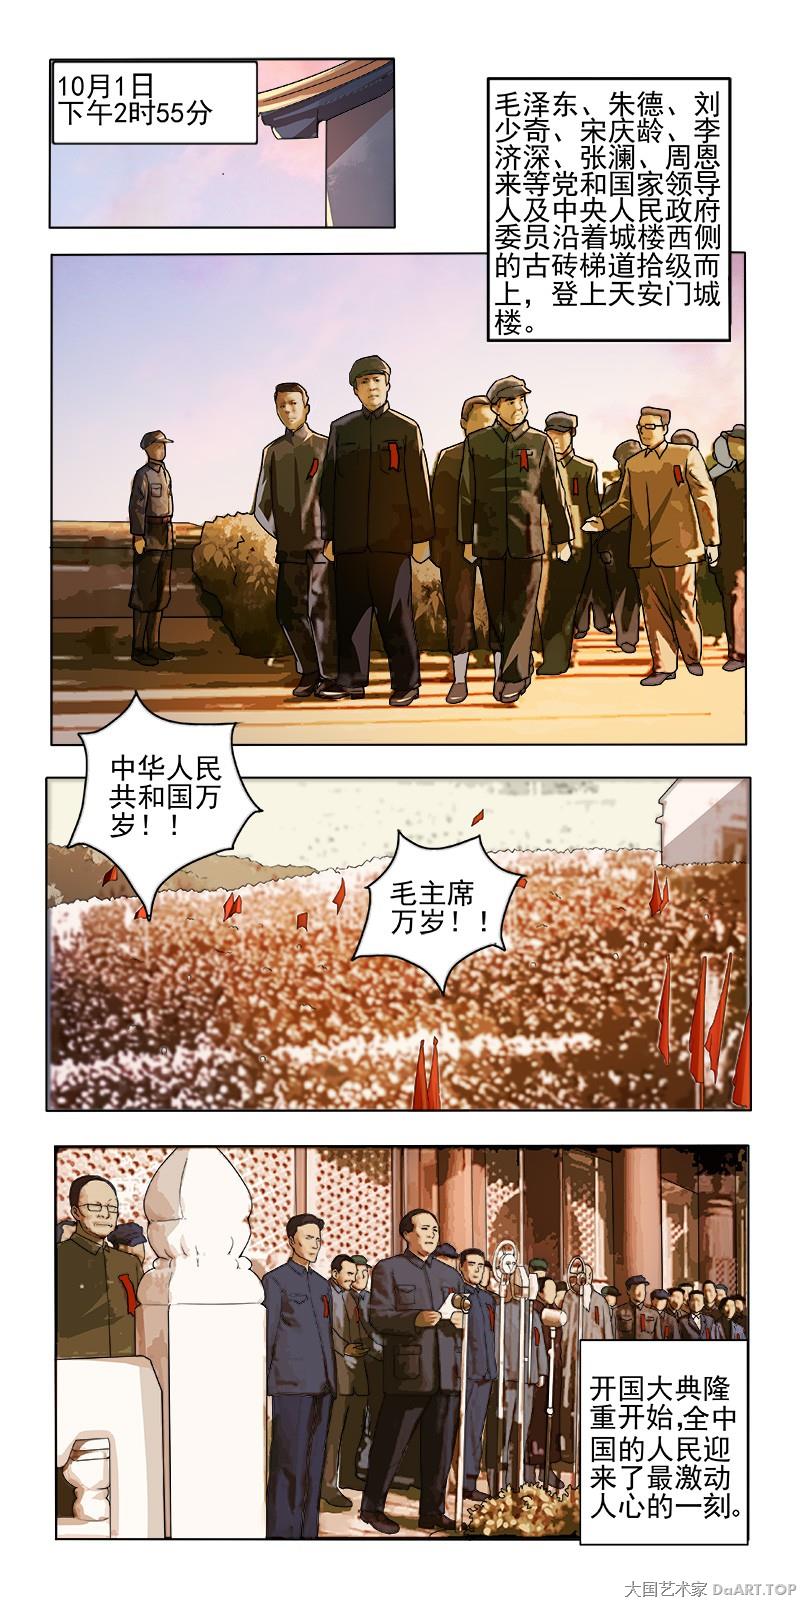 《庆祝新中国成立70周年党史新中国史系列漫画》以手绘漫画结合历史